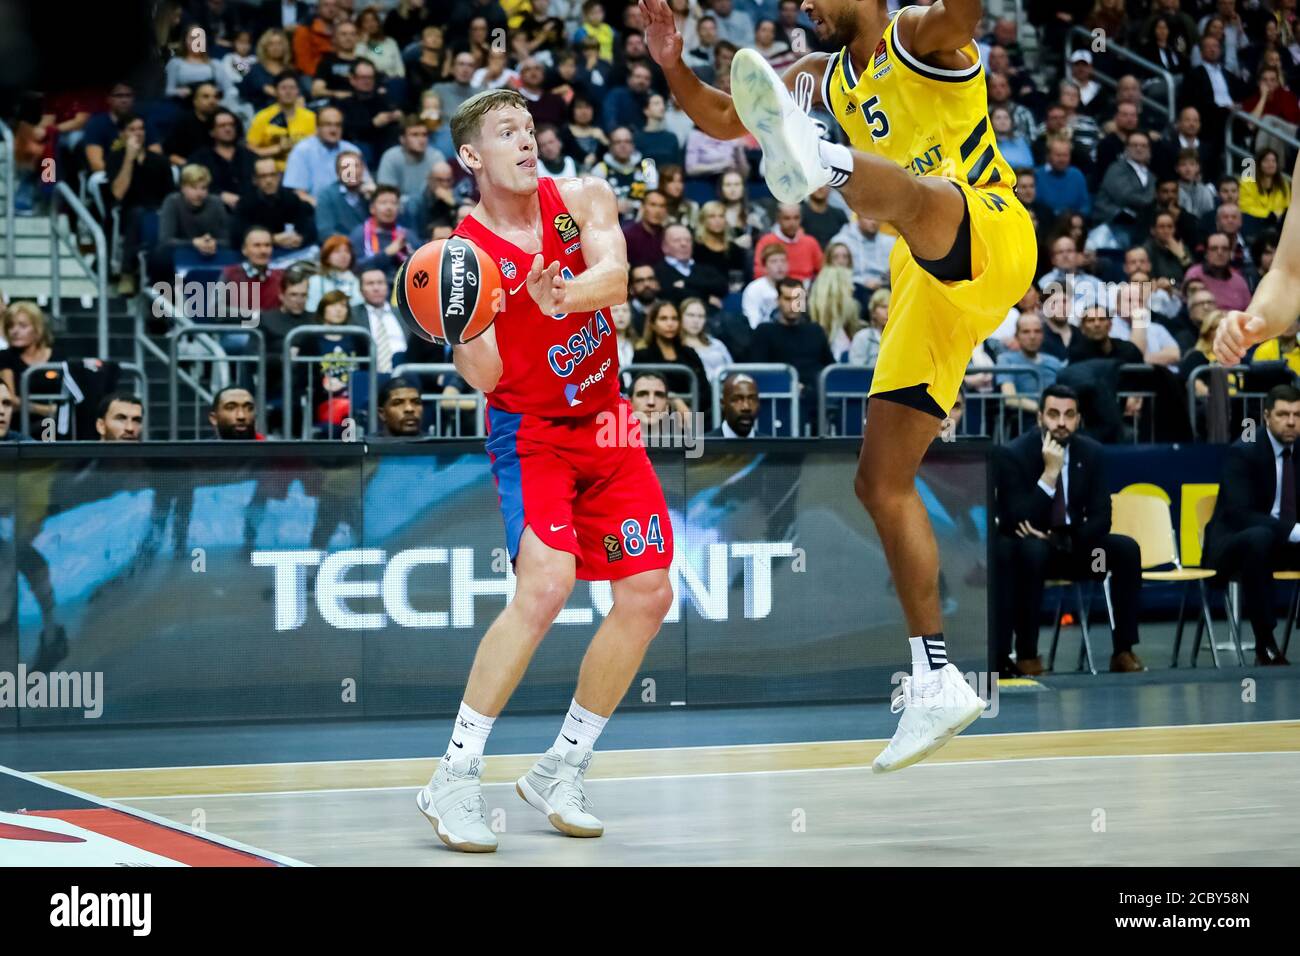 Berlin, Allemagne, 25 octobre 2019: Le joueur de basket-ball Ron Baker en action pendant le match de basket-ball EuroLeague entre Alba Berlin et CSKA Moscou Banque D'Images